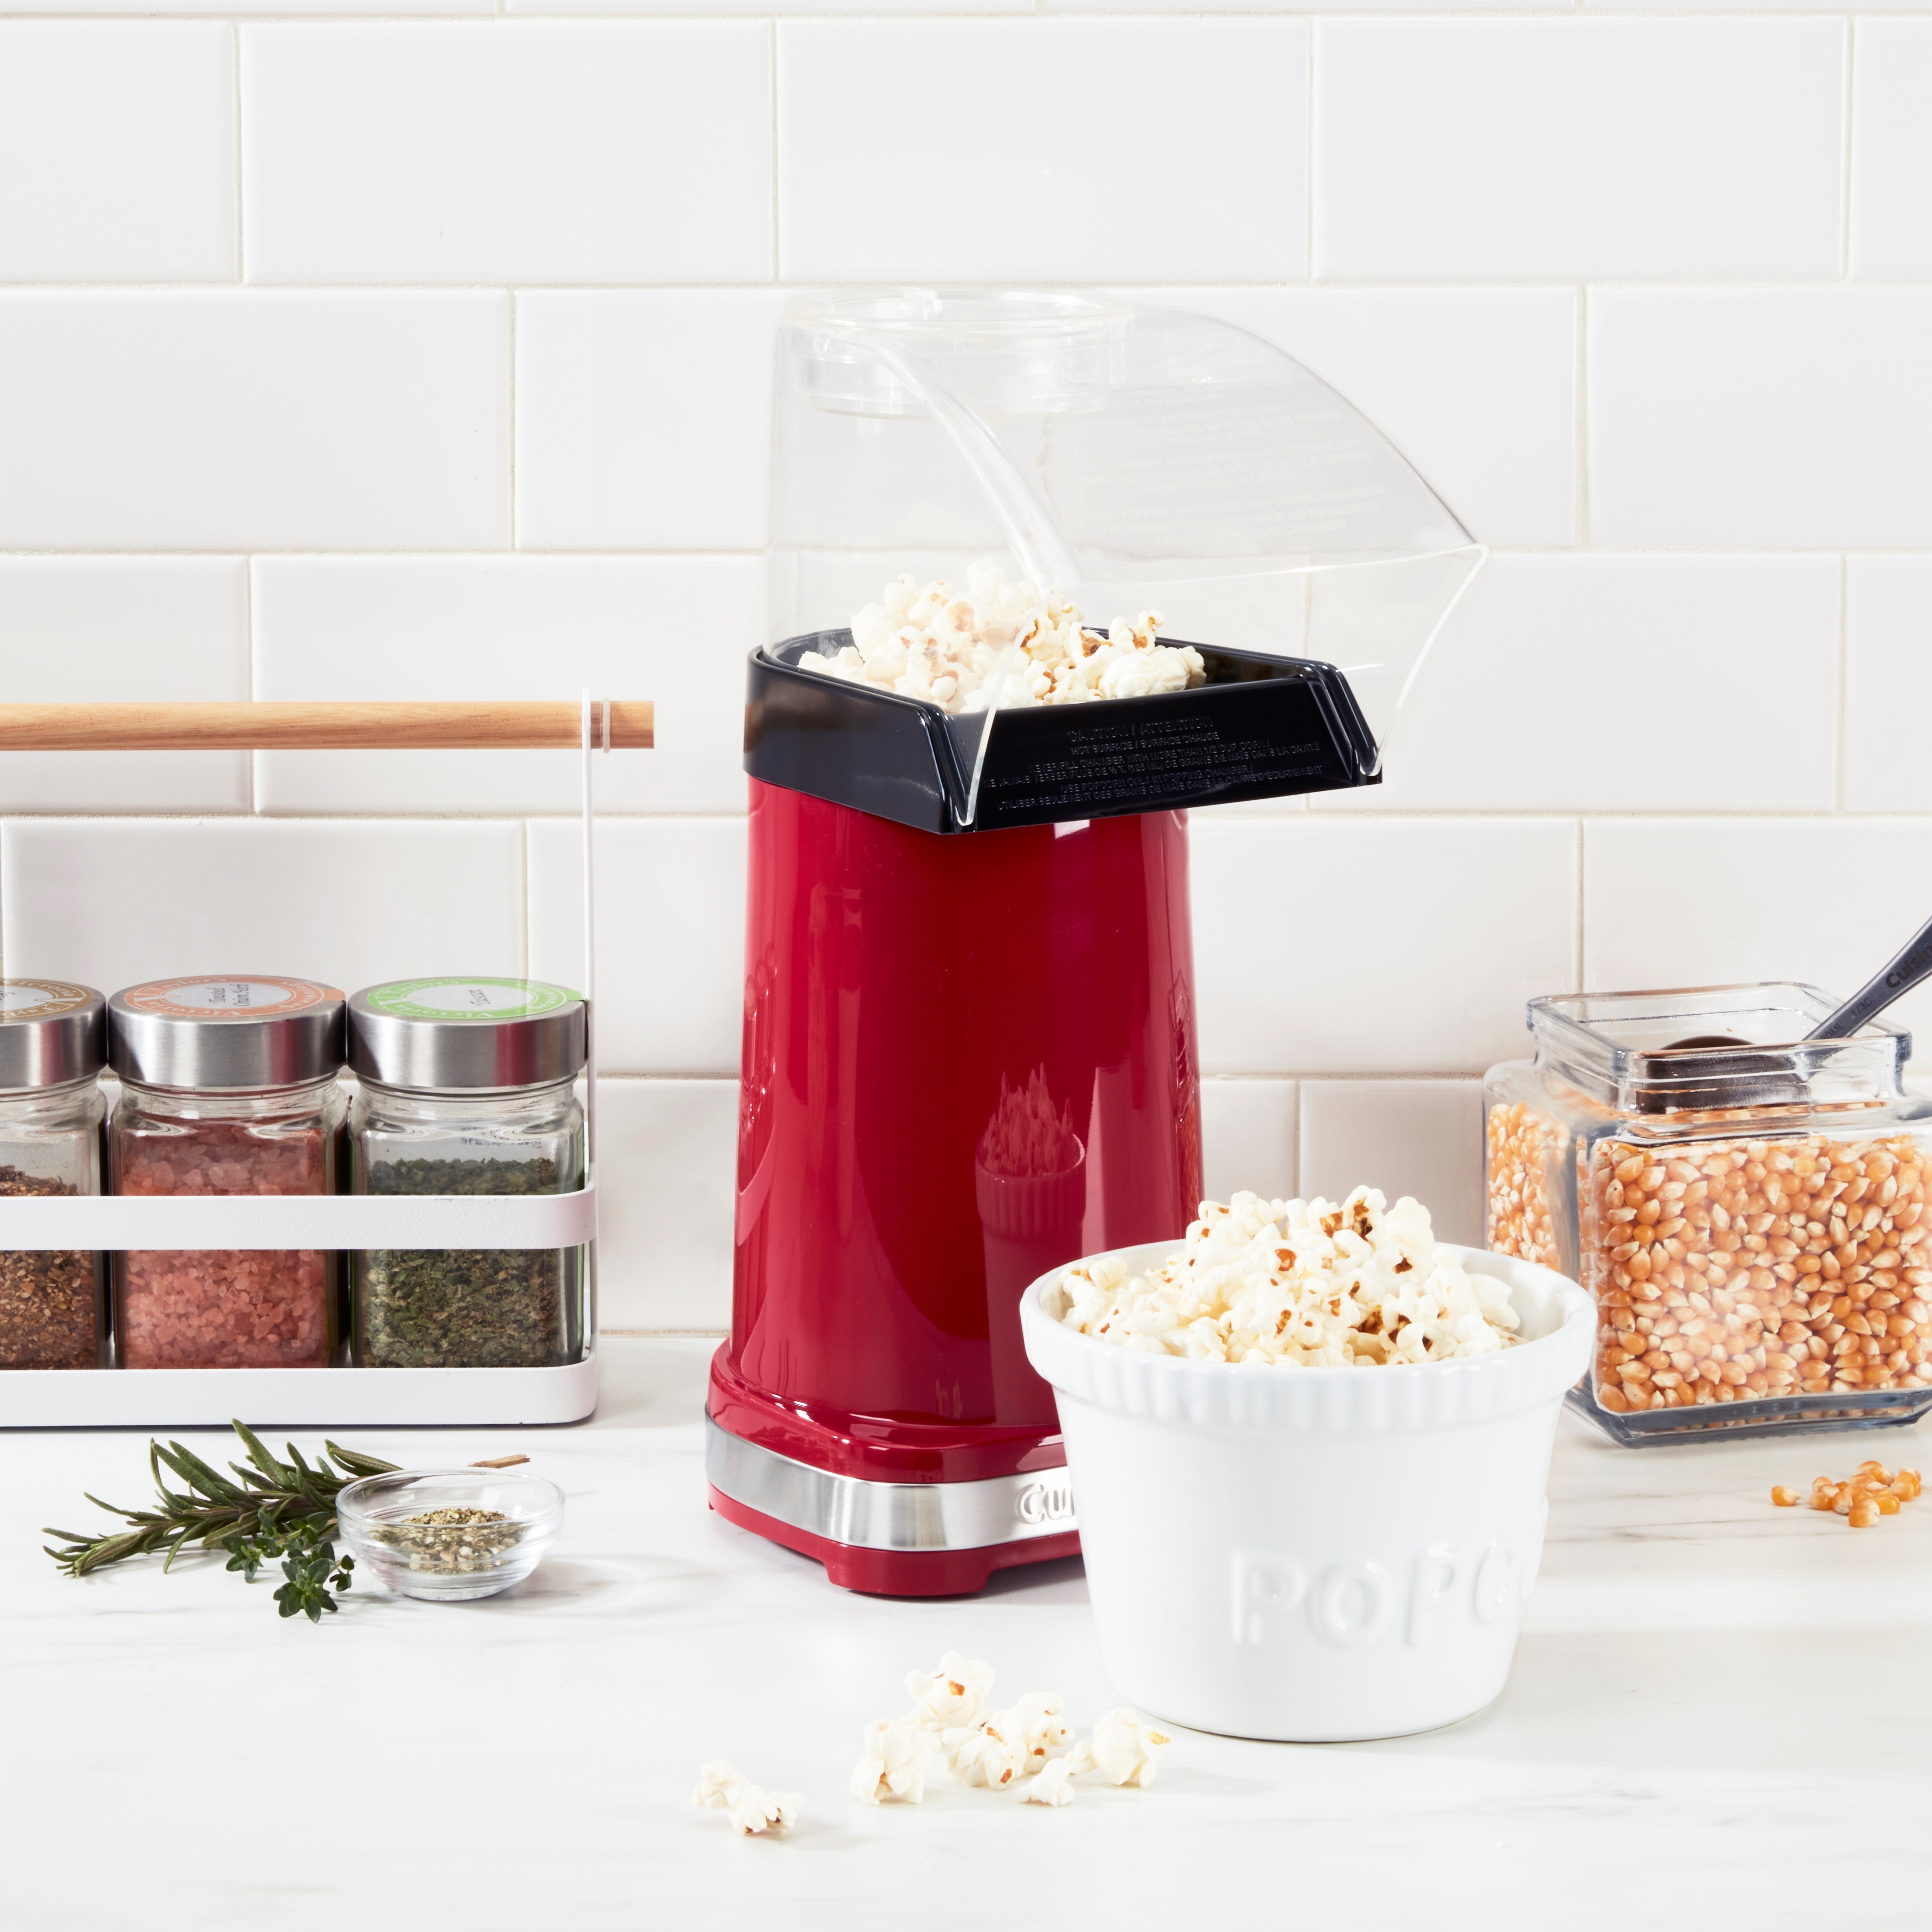 EasyPop™ Hot Air Popcorn Maker